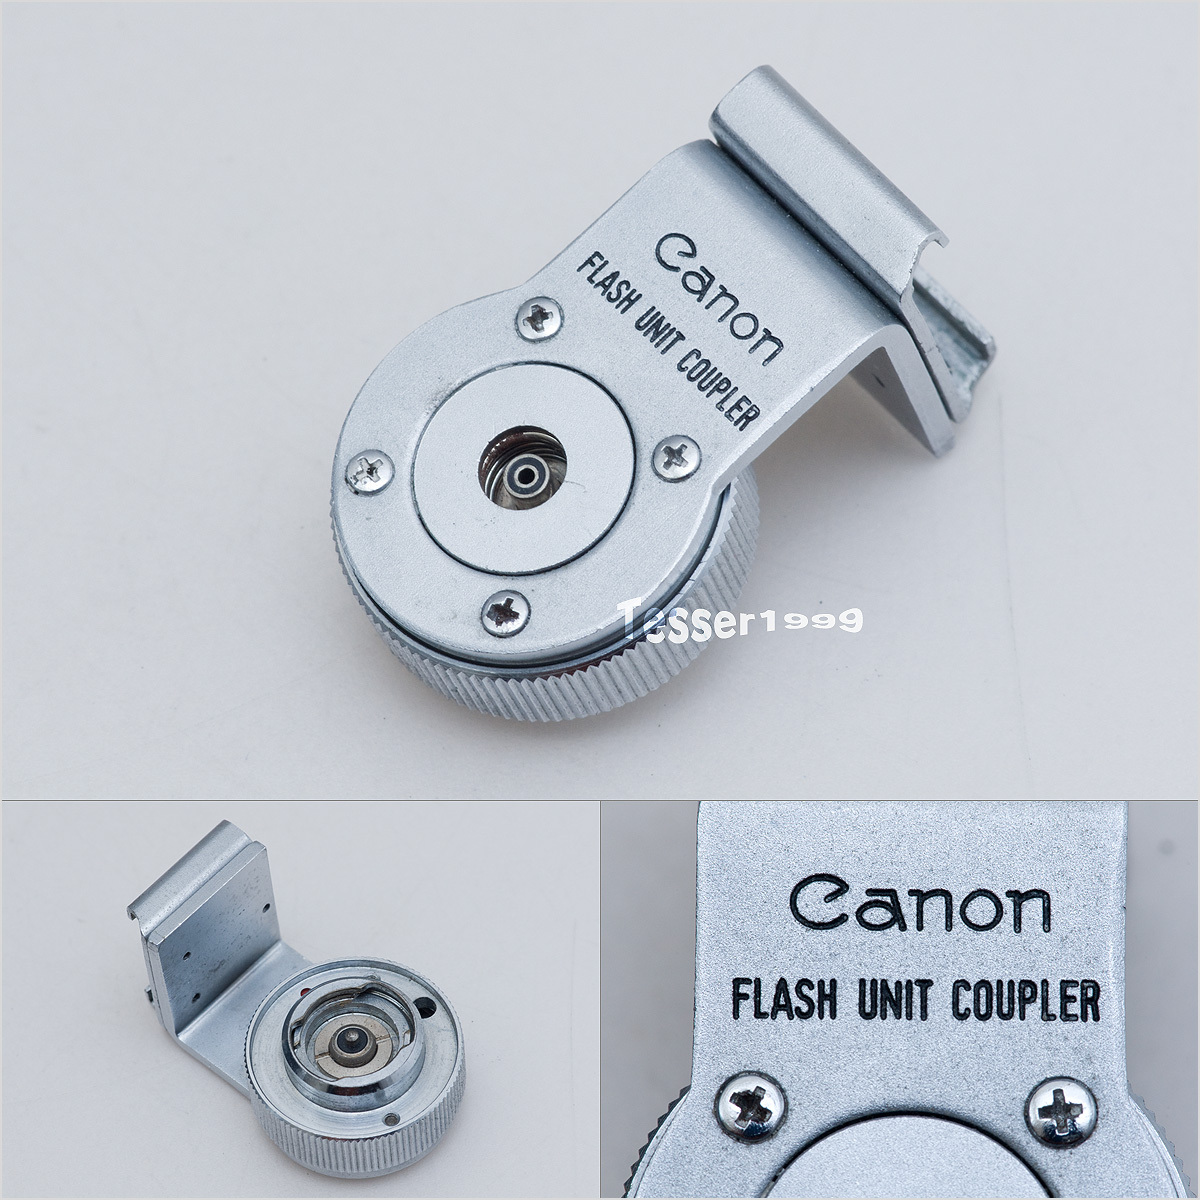 Canon FLASH UNIT COUPLER フラッシュユニットカプラー 7等に [0518]_画像1